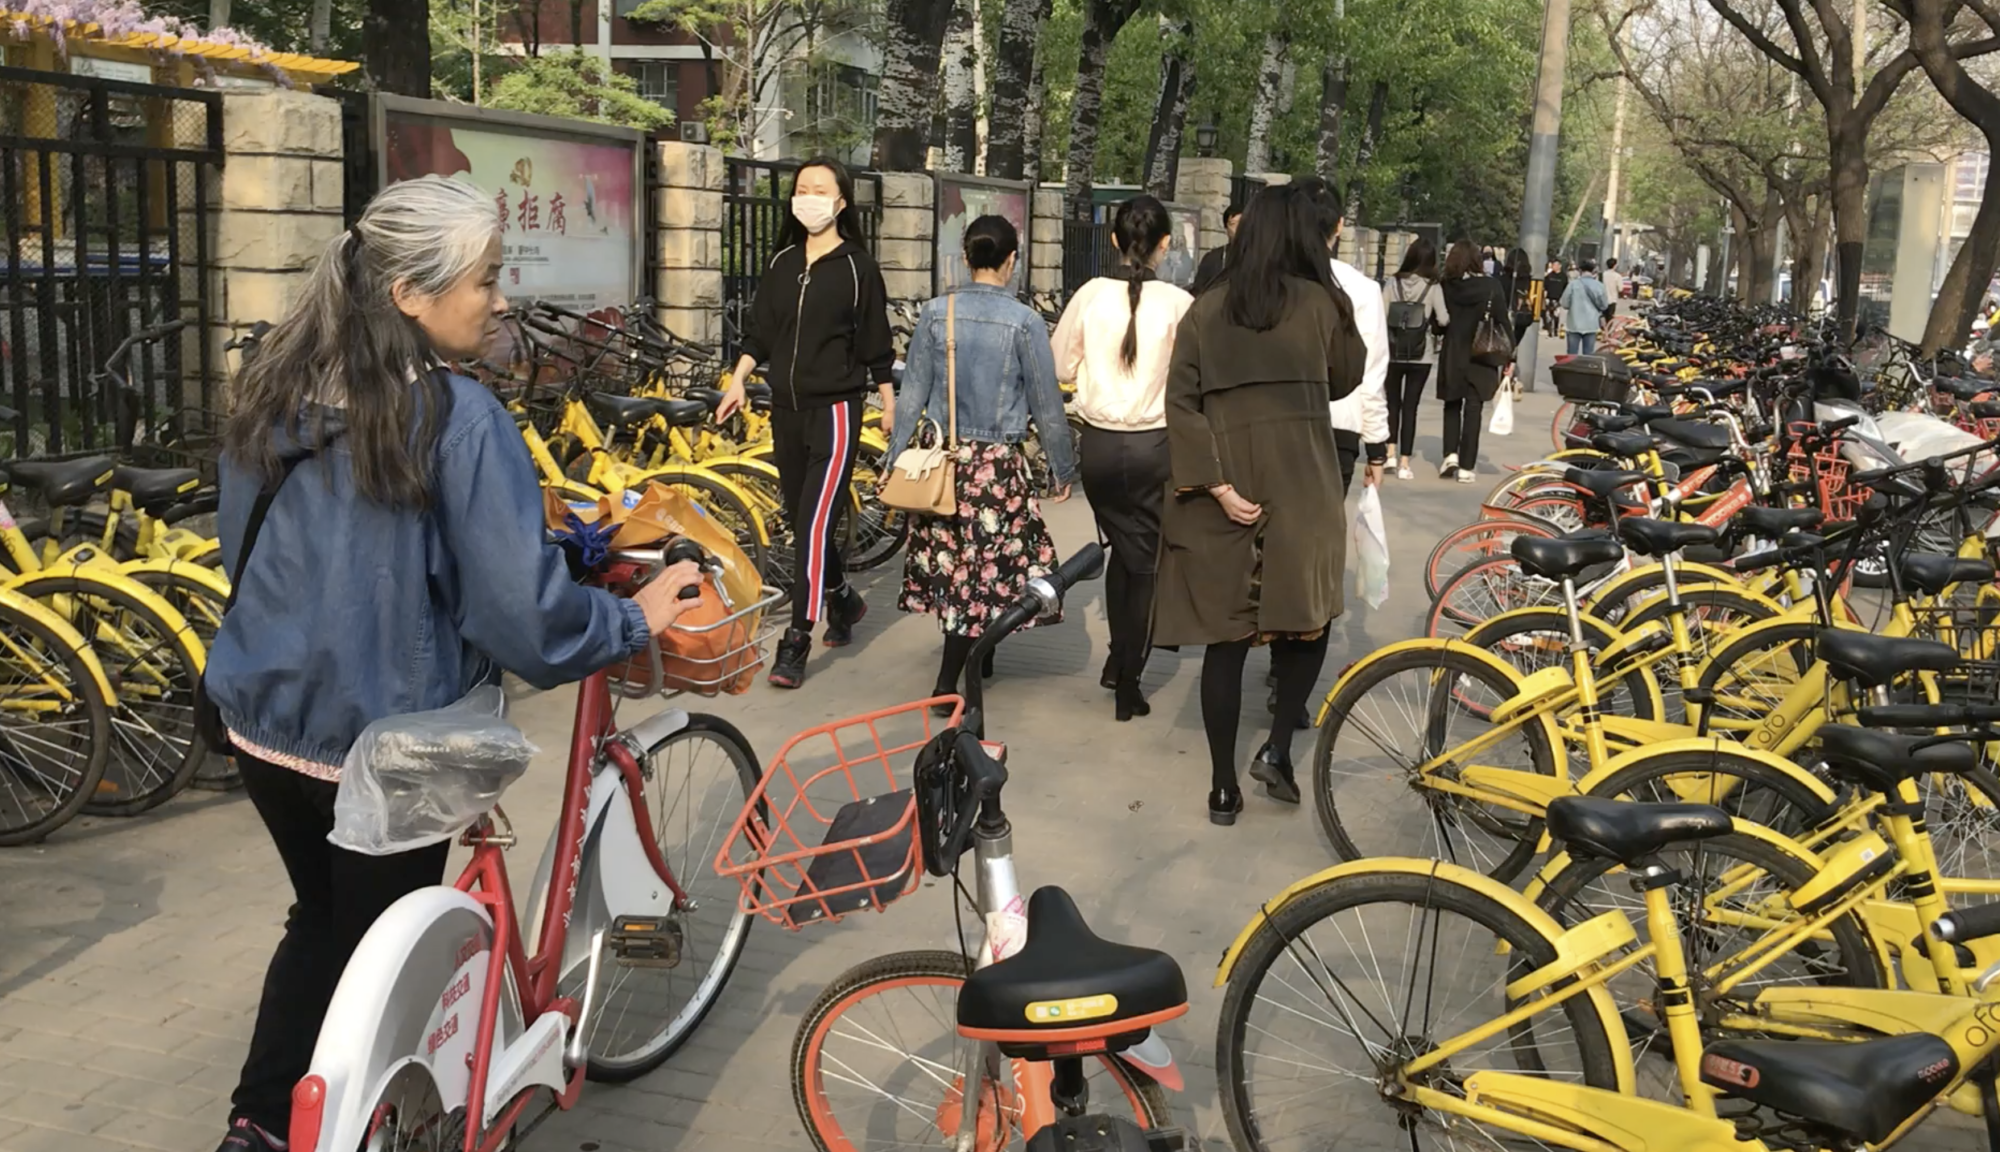 Syklene i Kinas storbyer er på full fart tilbake i trafikkbildet - i form av leiesykler.